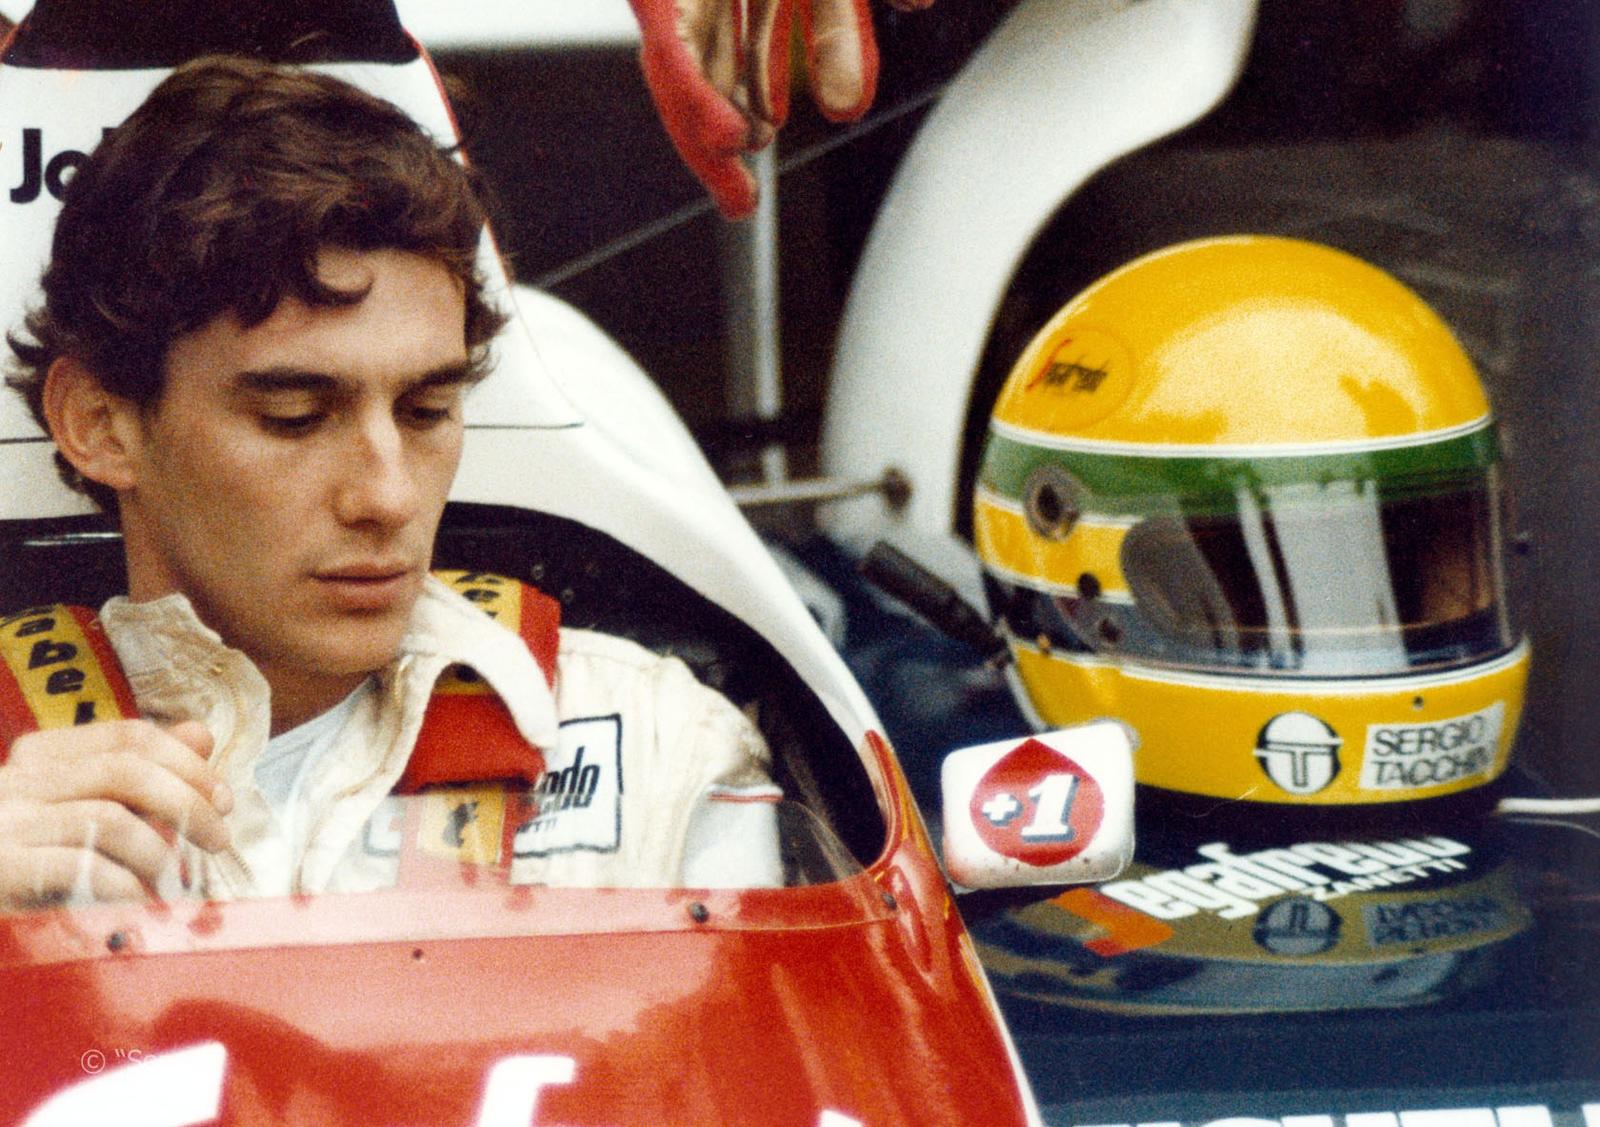 A Primeira Corrida De Ayrton Senna Na F1 Foi Há 33 Anos